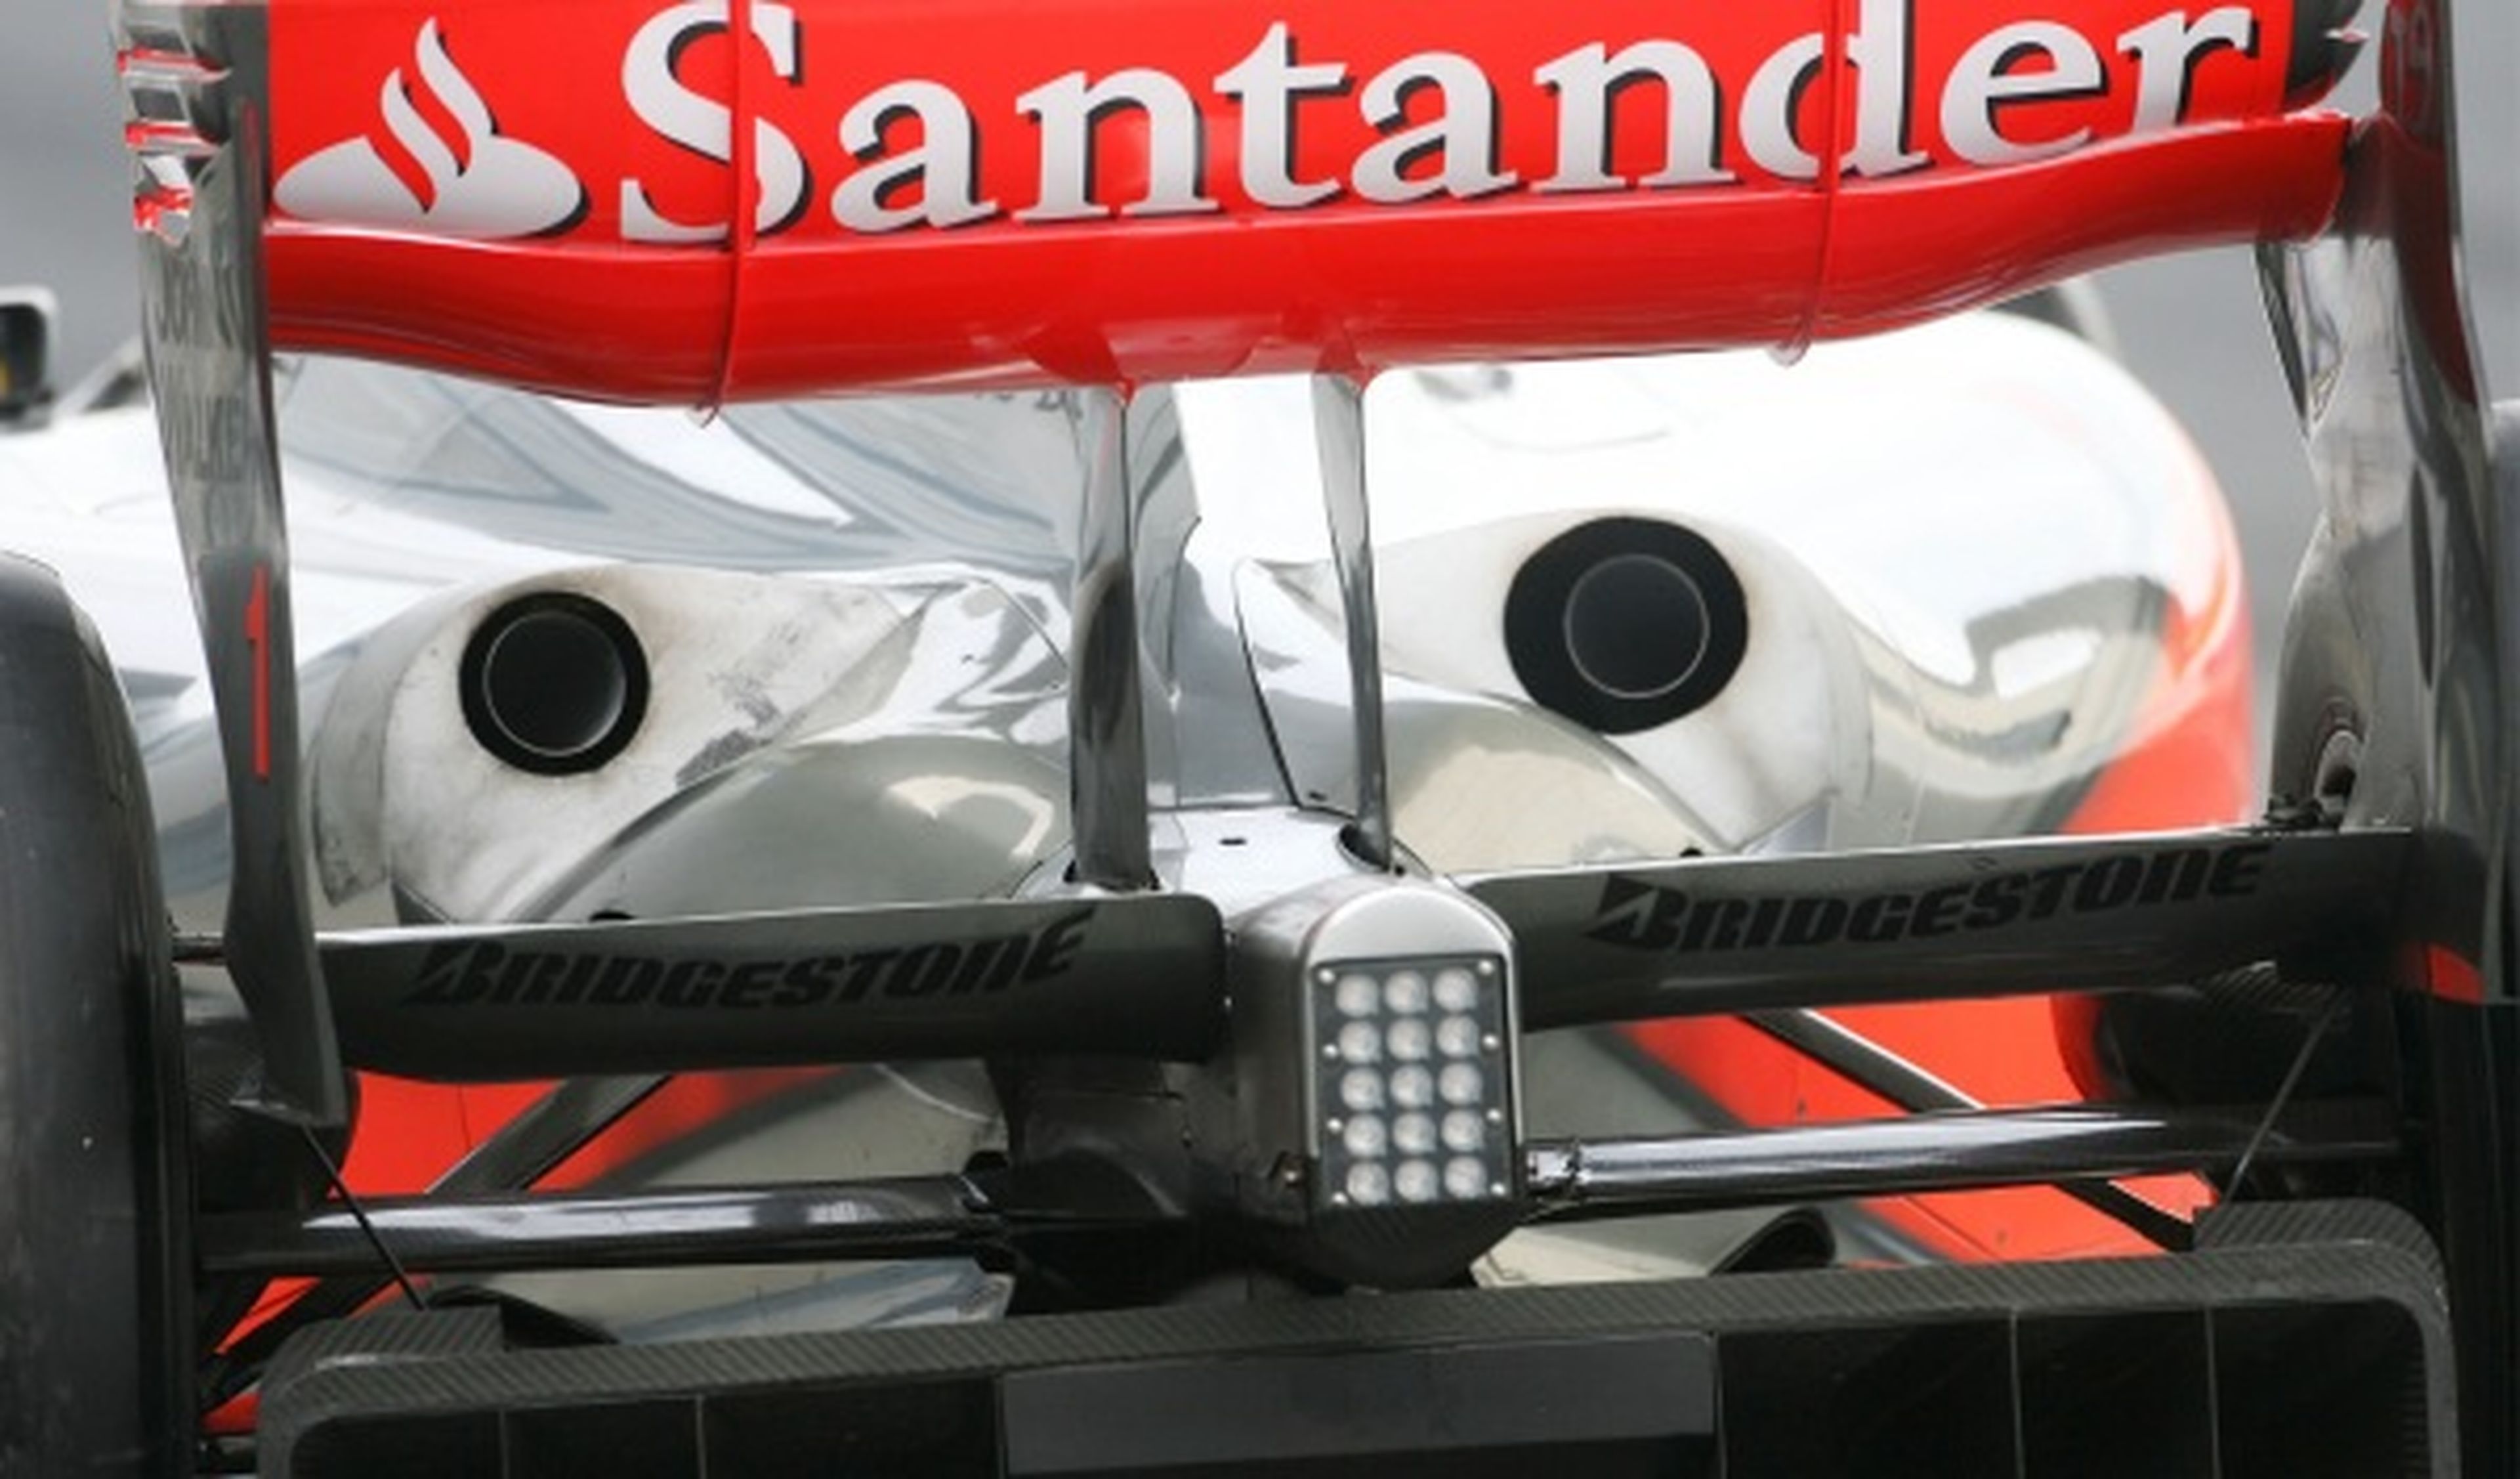 McLaren 2008